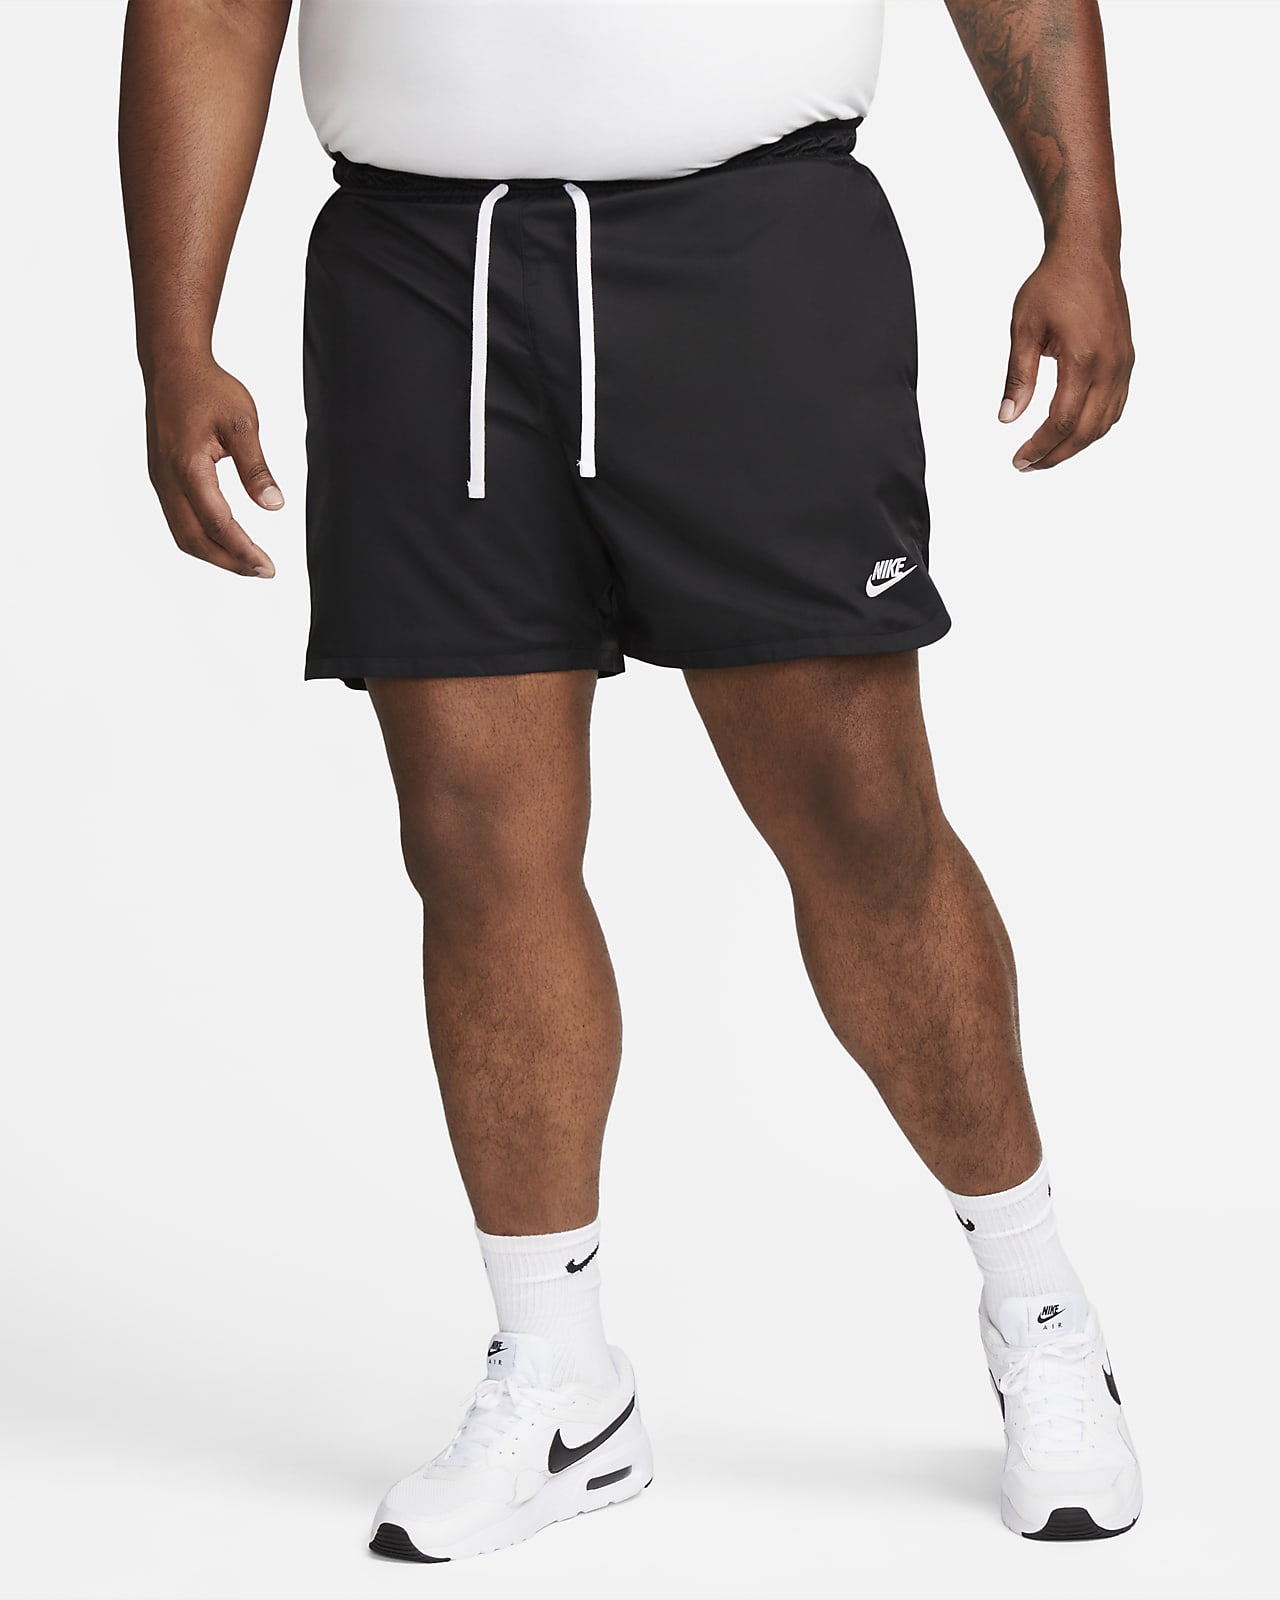 Comprar shorts para hombre online. Nike MX